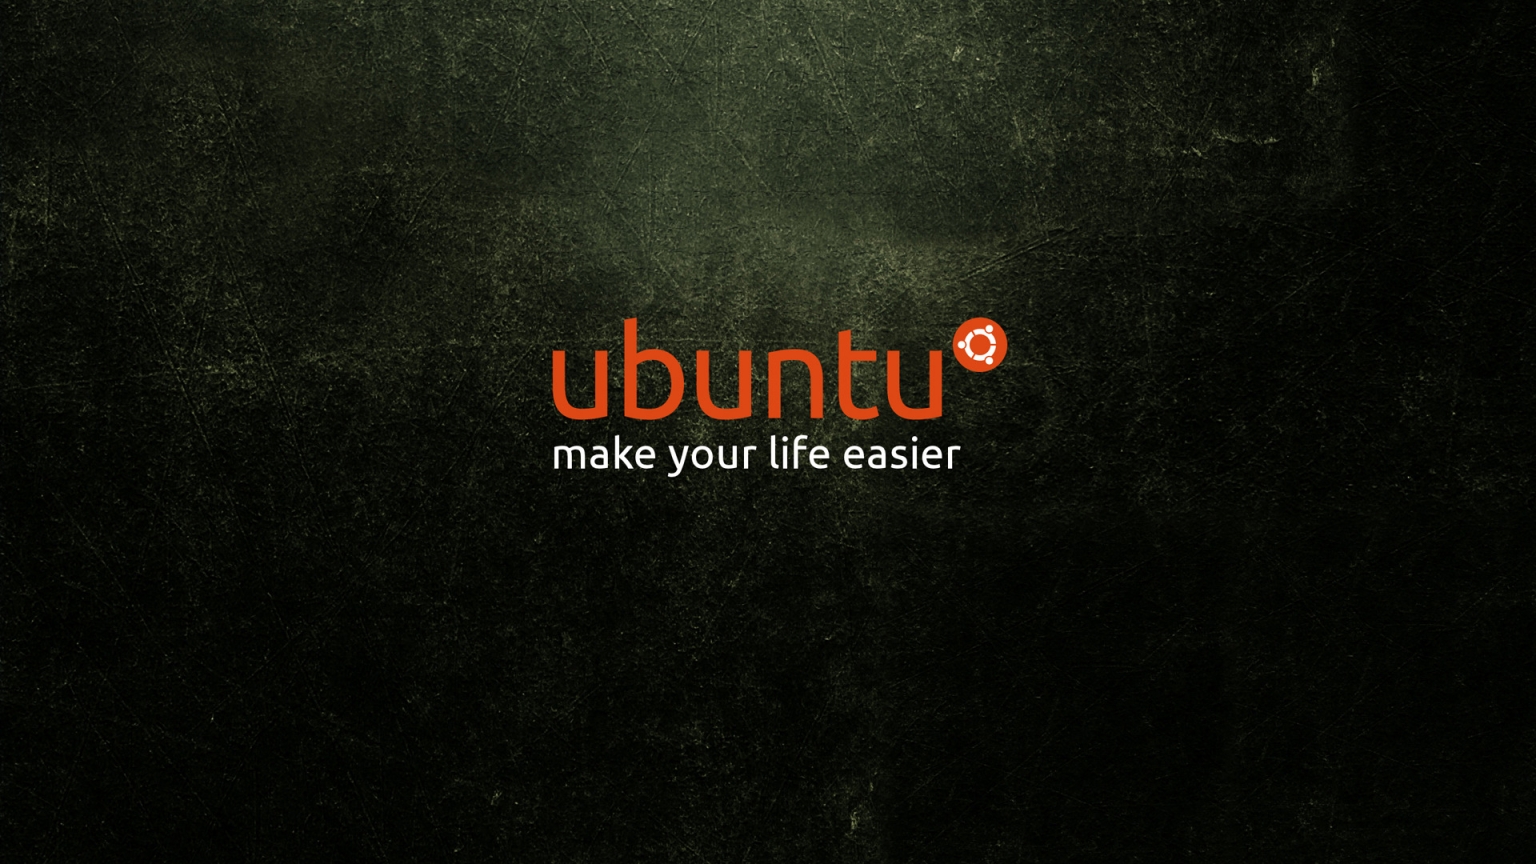 Ubuntu Life for 1536 x 864 HDTV resolution